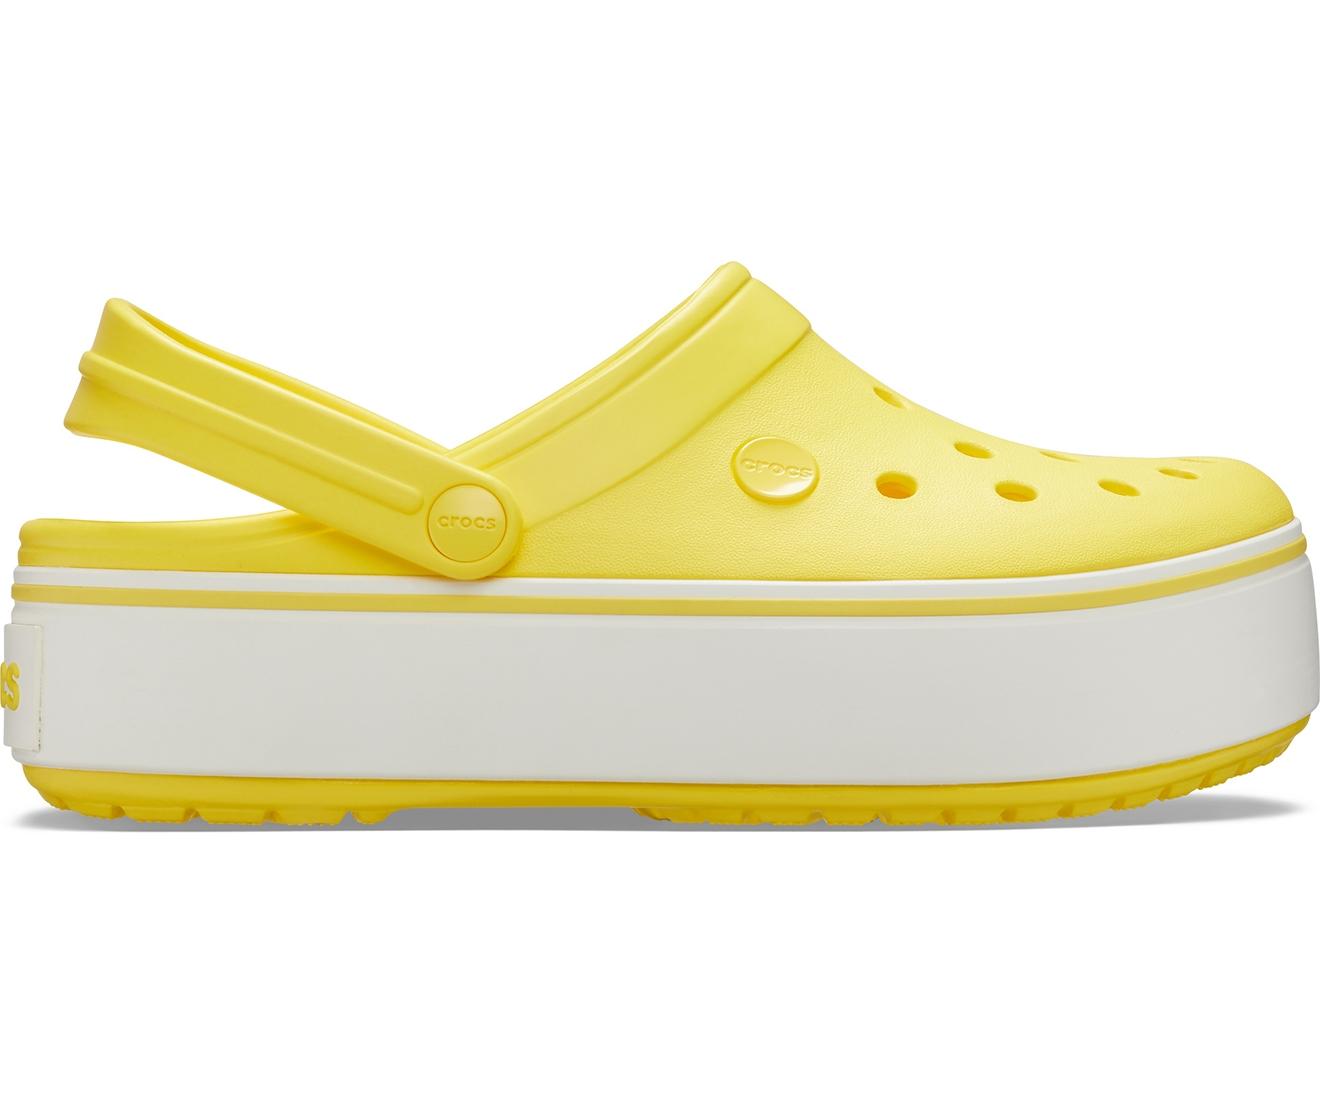 Кроксы на подошве. Crocs 205434. Крокс женские желтые. Сабо крокс женские на платформе. Желтые кроксы на платформе.